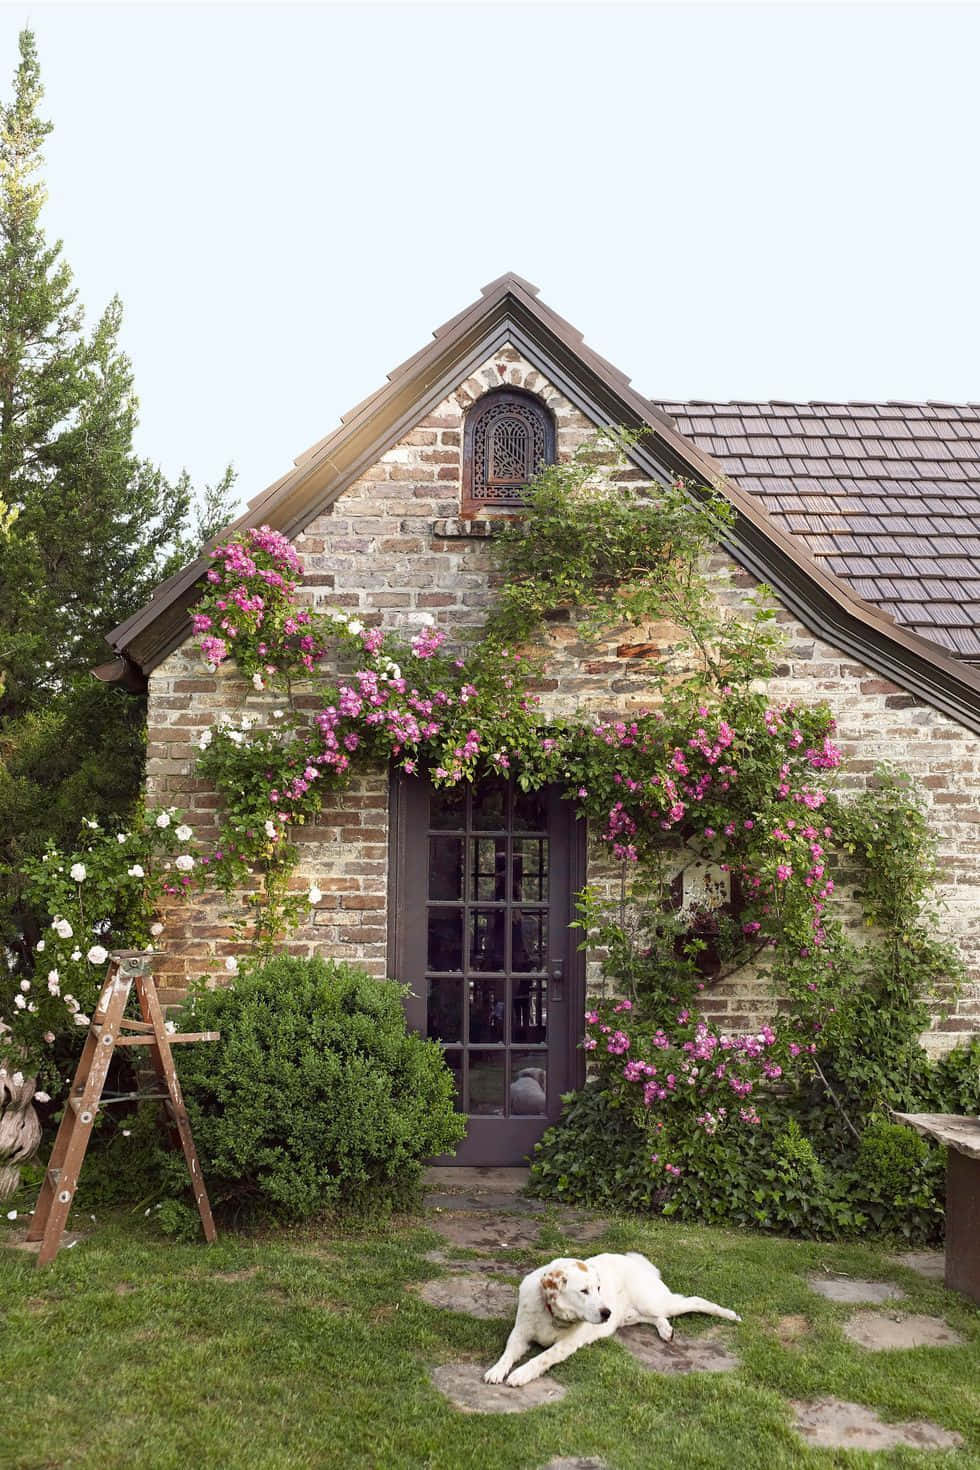 Immaginefotografica Di Una Casa Tudor In Un Cottage Garden.